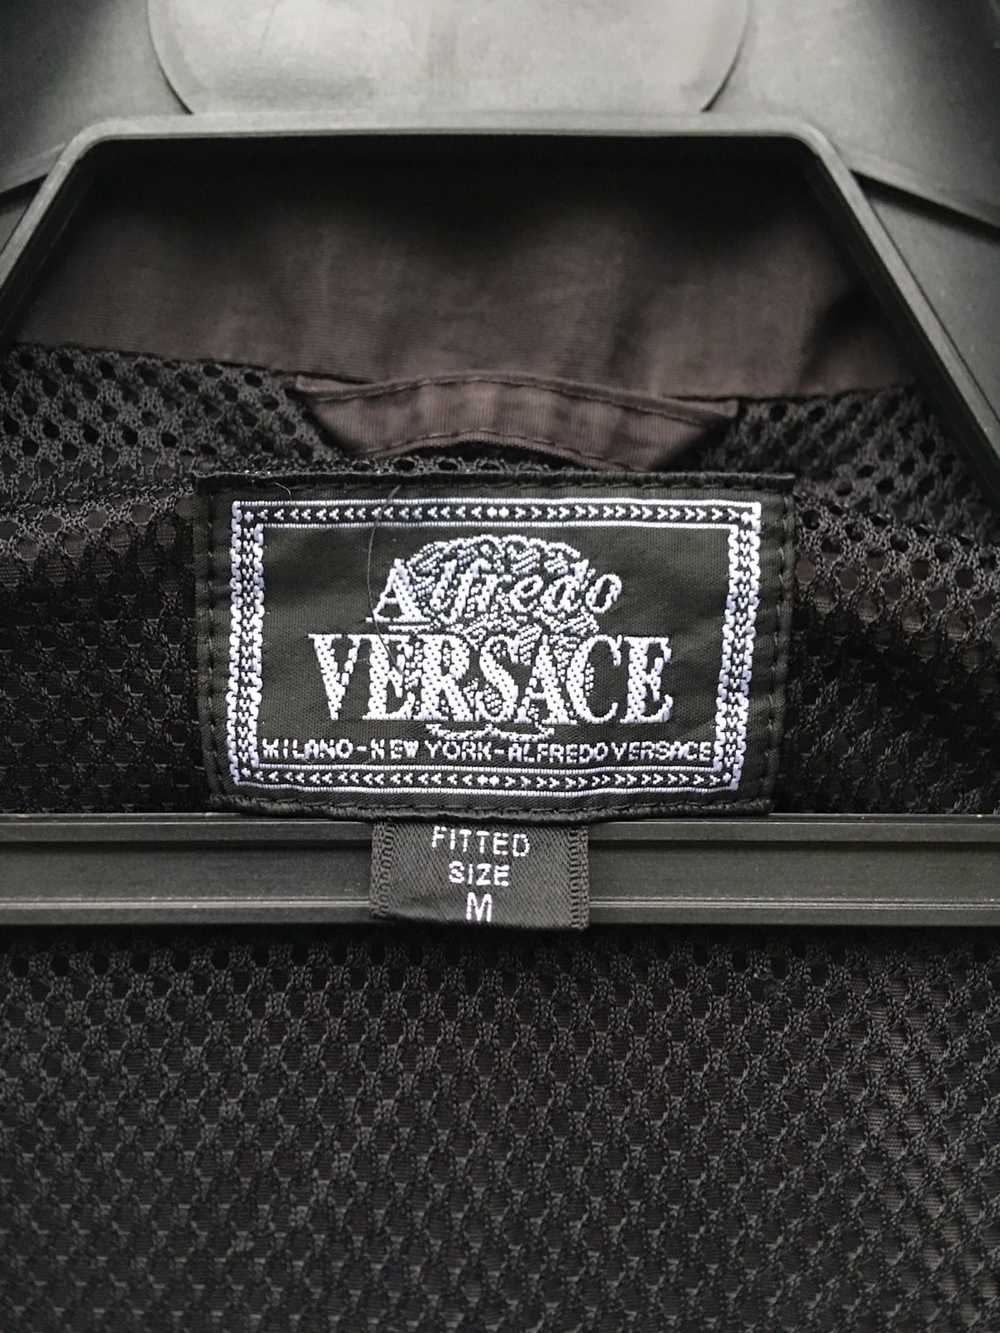 Outdoor Life × Versace Versace Windbreaker Vest - image 6